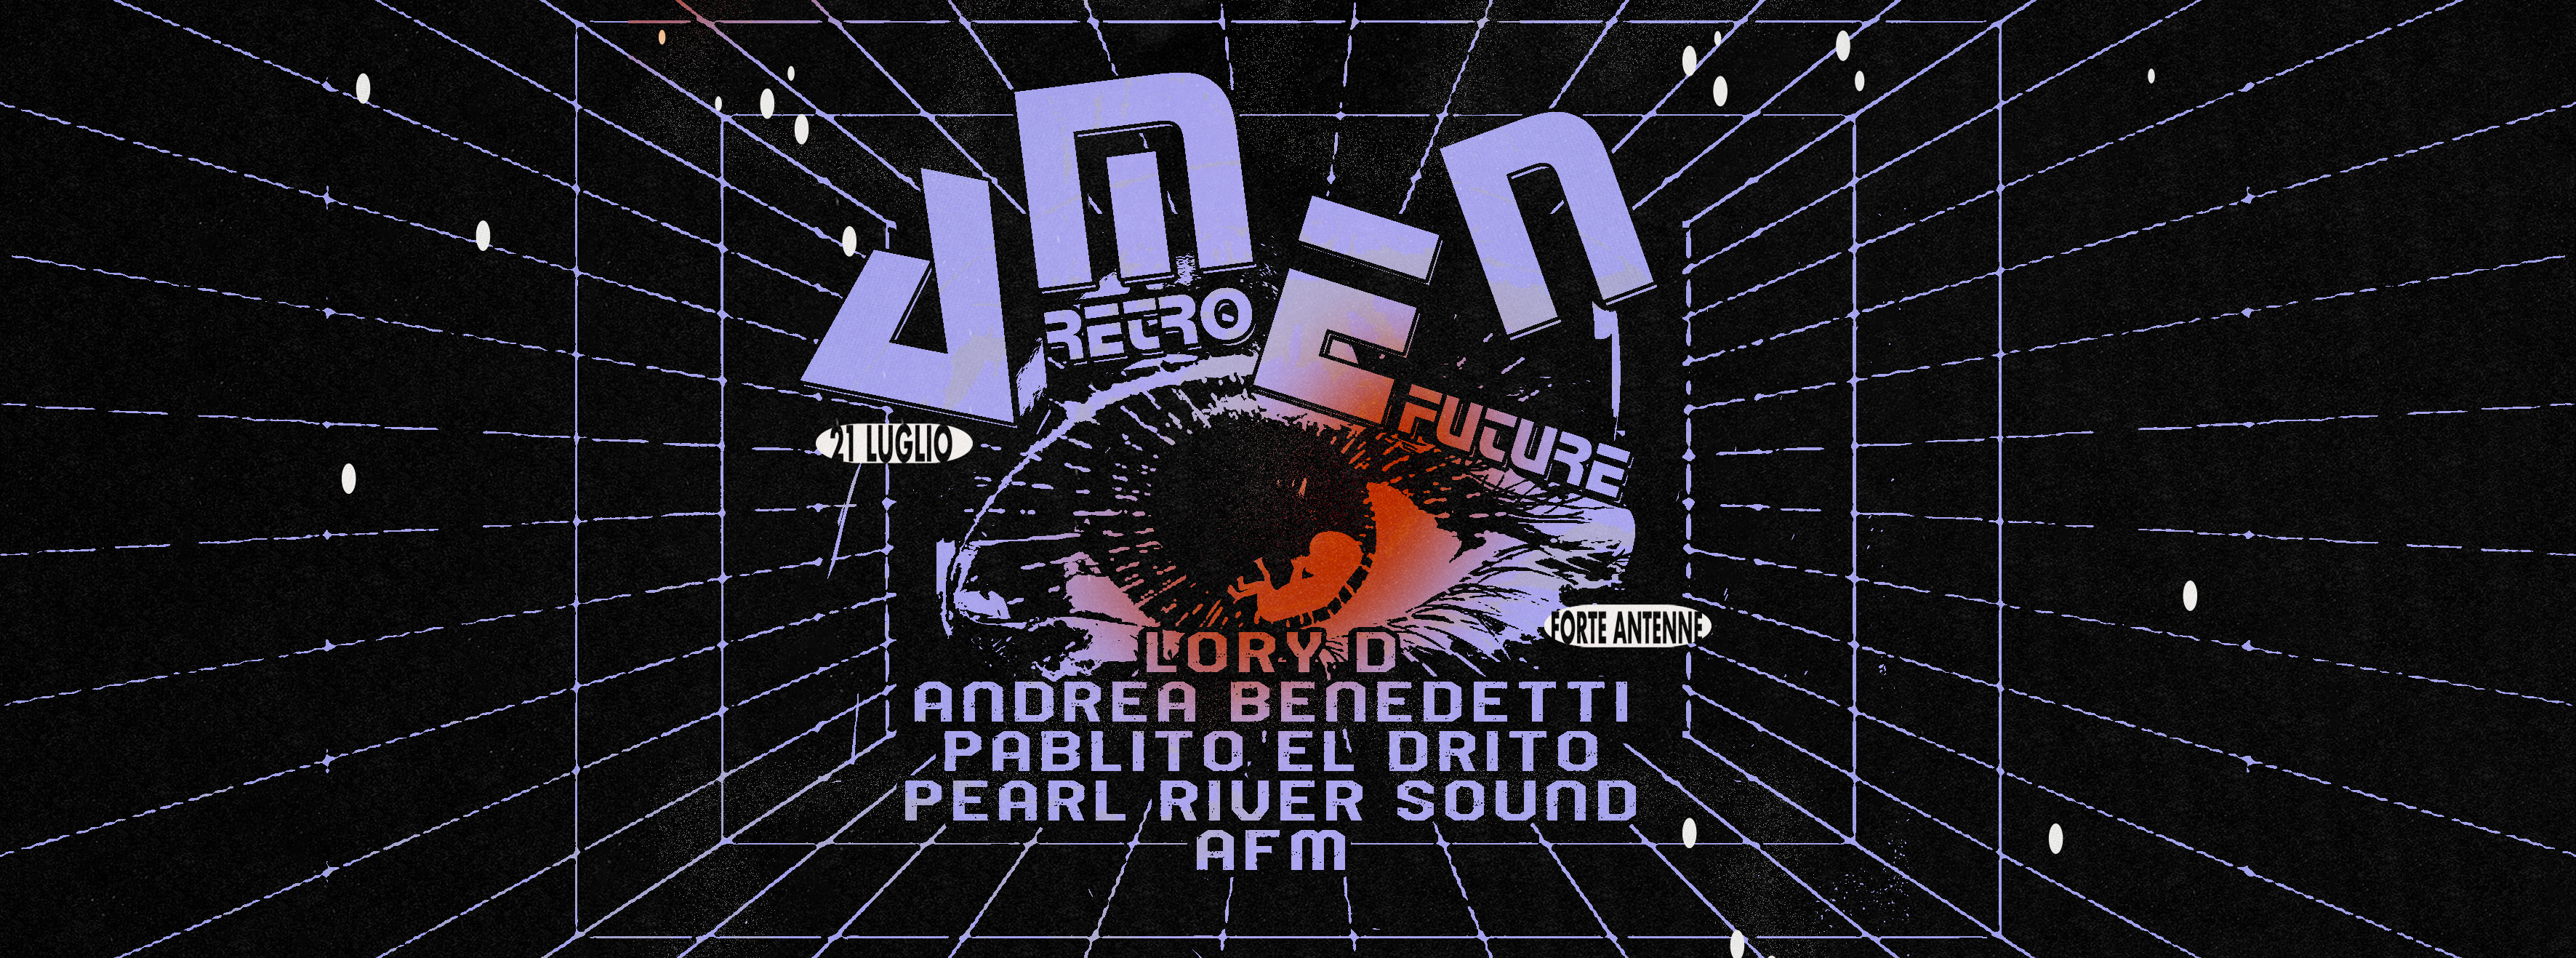 AMEN retro-future w/ Lory D, Andrea Benedetti, Pablito el Drito, Pearl River Sound, AFM, - フライヤー裏